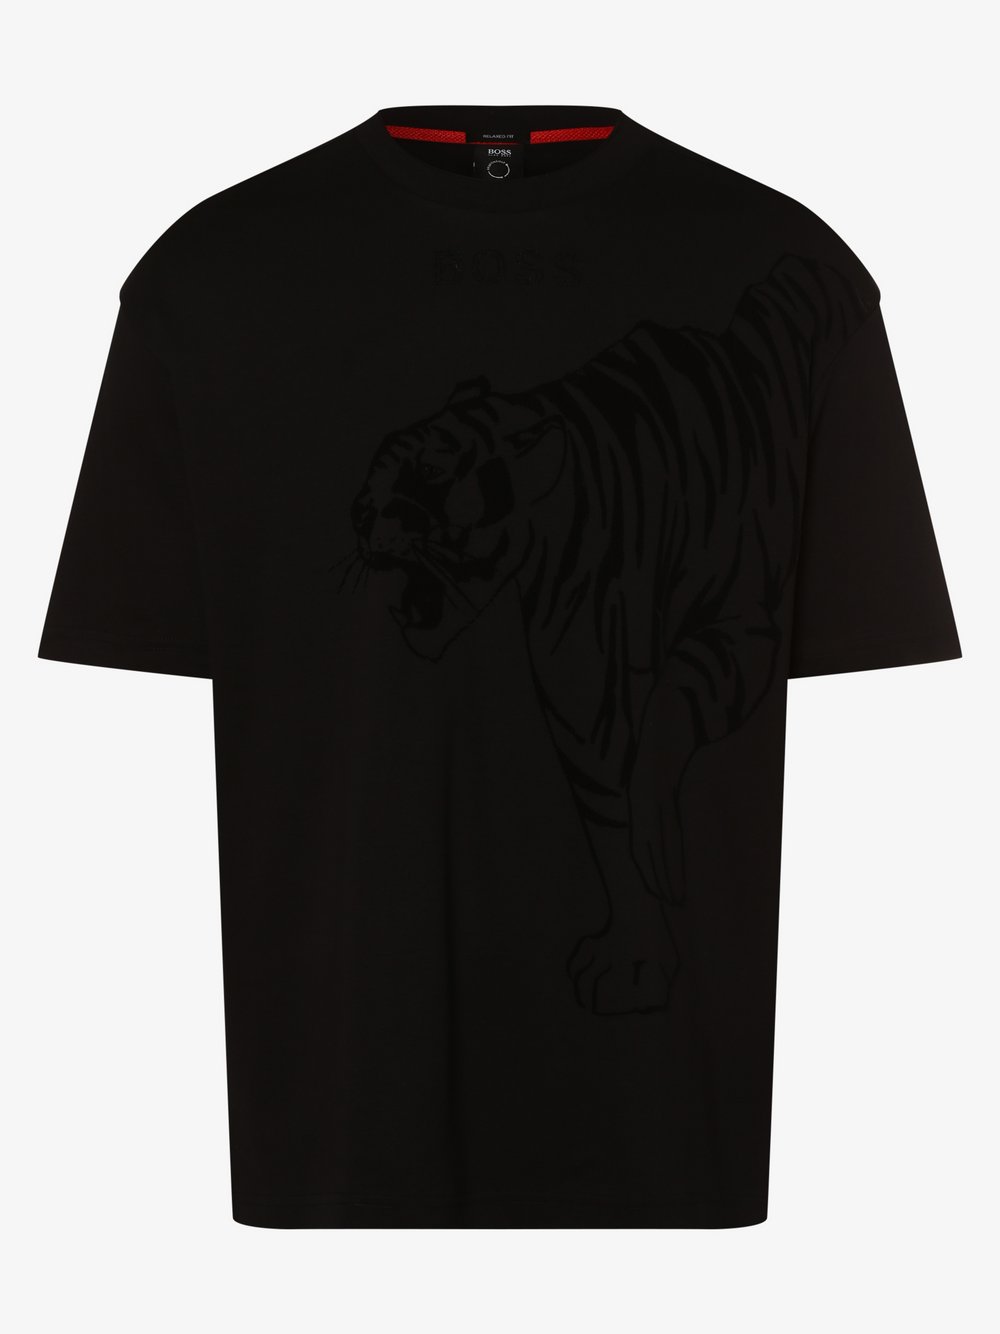 BOSS Athleisure - T-shirt męski – Tee Iconic, czarny